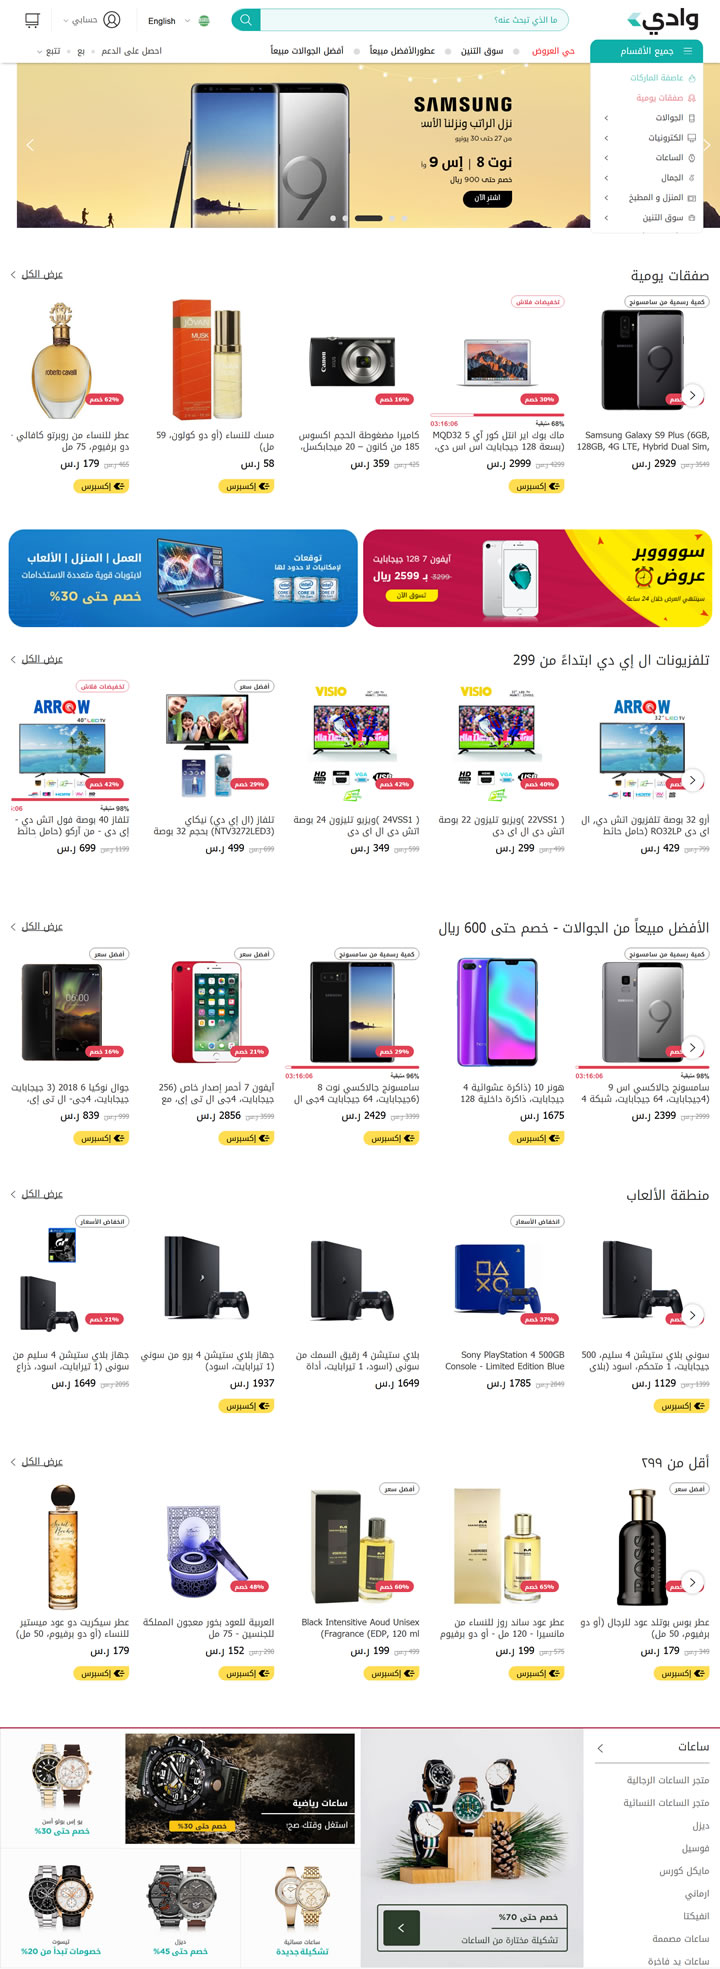 沙特阿拉伯在线购物网站：Wadi.com